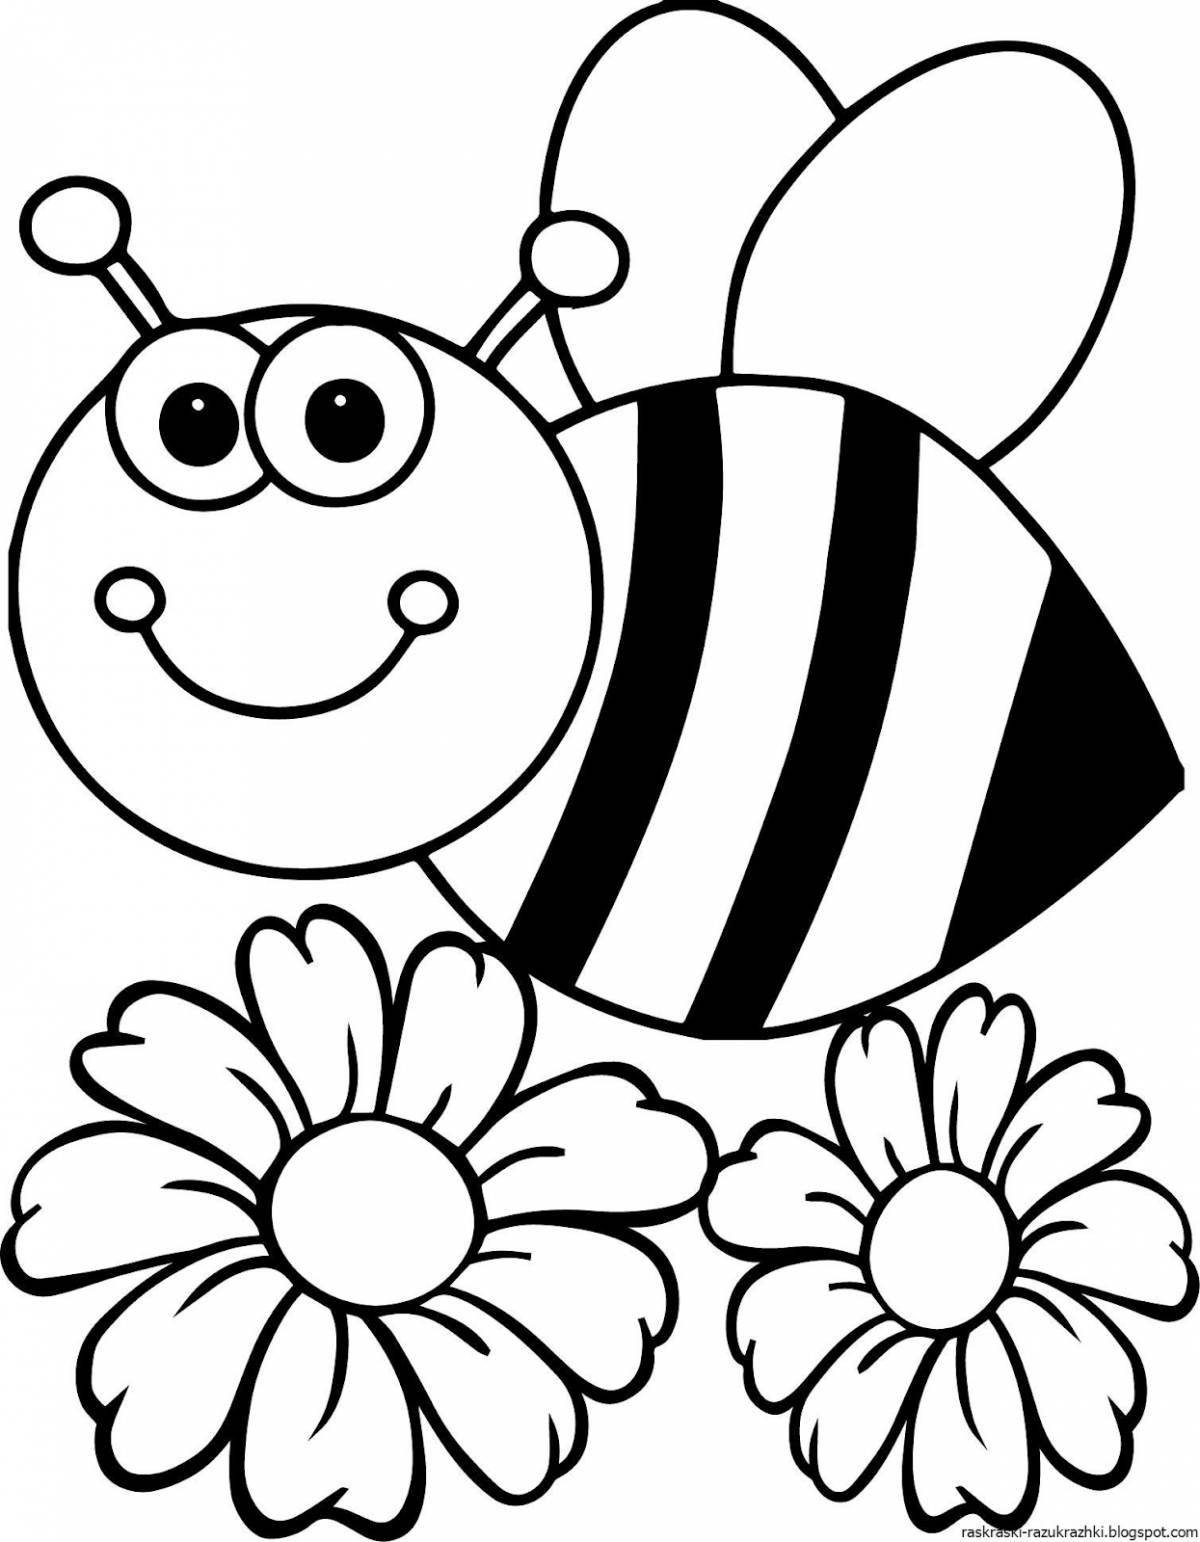 Милая пчелка-раскраска для детей 3-4 лет